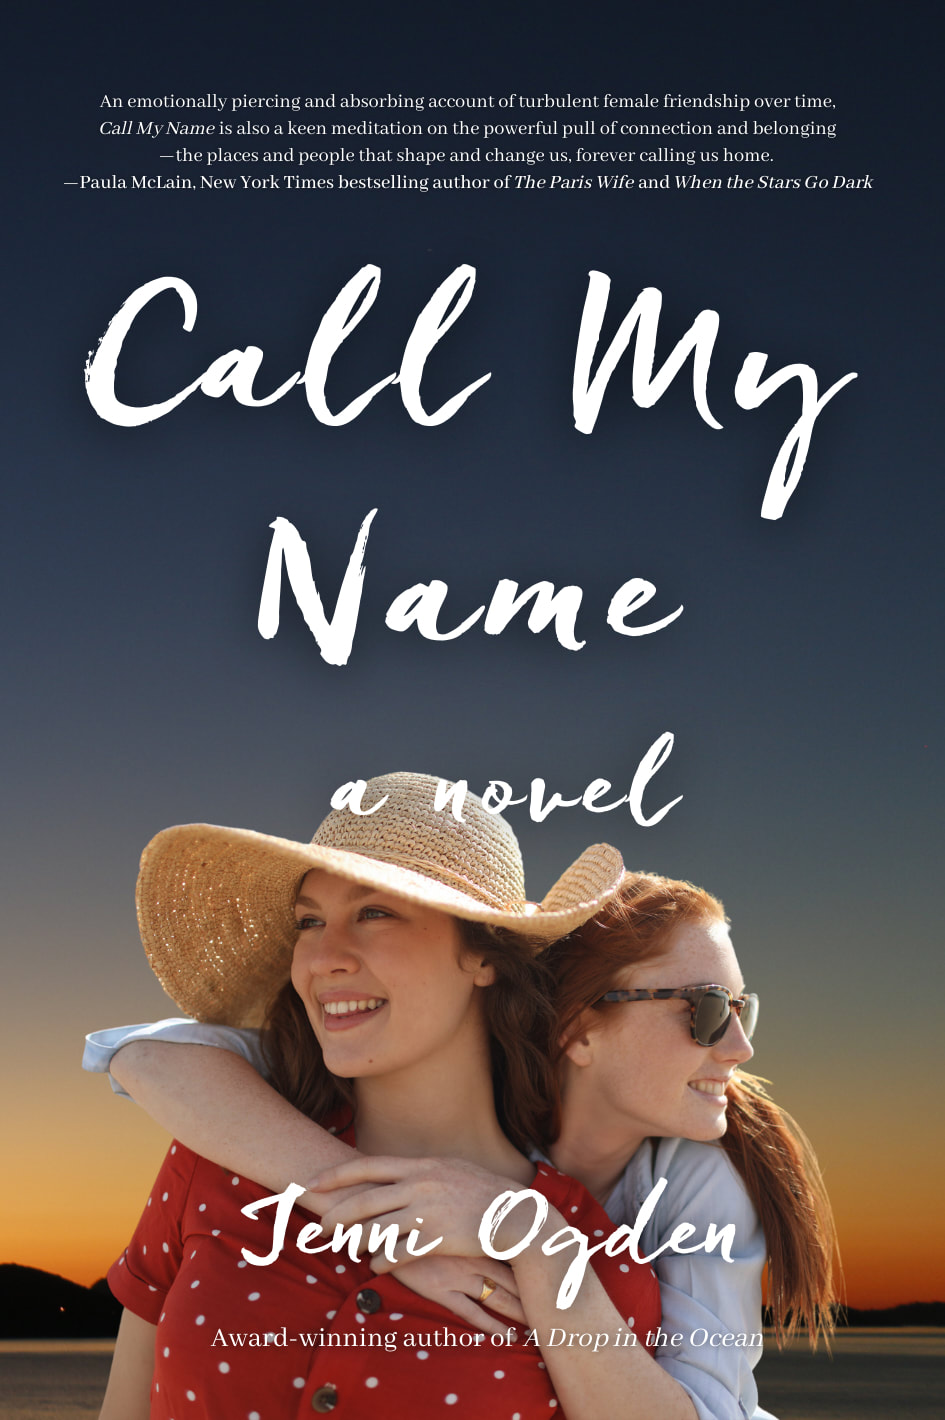 CALL MY NAME (a novel) by Jenni Ogden